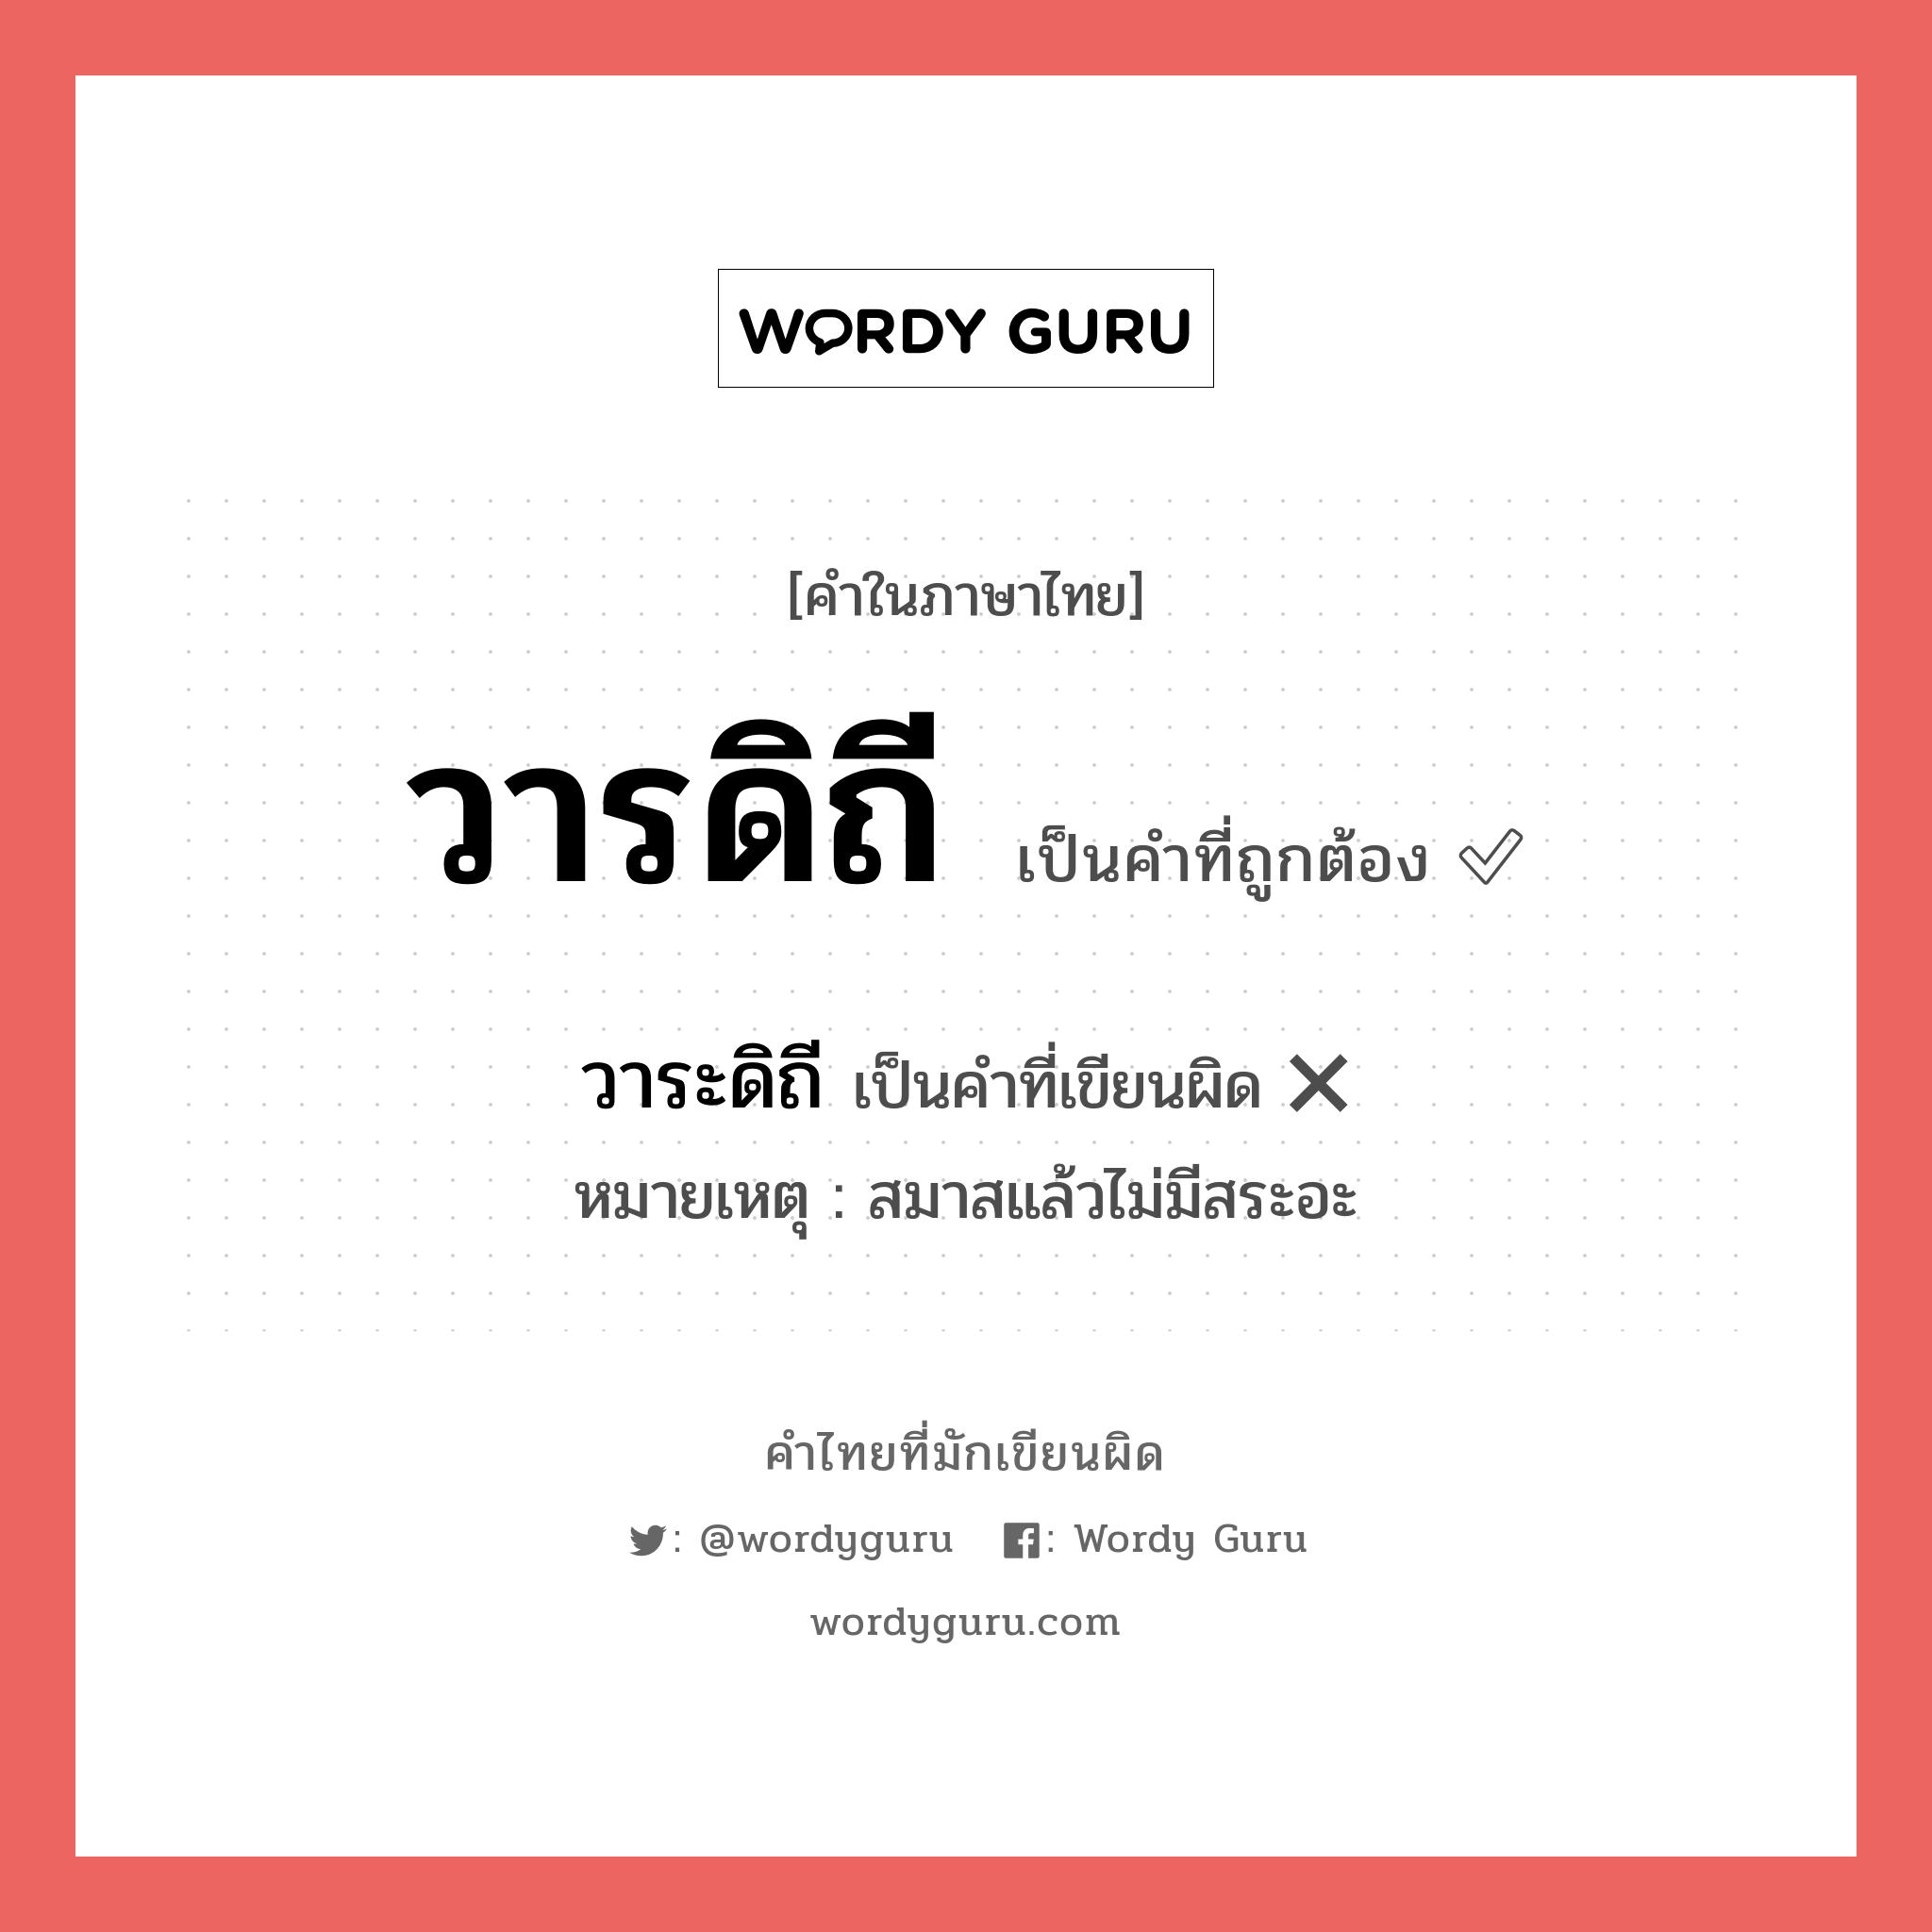 วารดิถี หรือ วาระดิถี คำไหนเขียนถูก?, คำในภาษาไทยที่มักเขียนผิด วารดิถี คำที่ผิด ❌ วาระดิถี หมายเหตุ สมาสแล้วไม่มีสระอะ